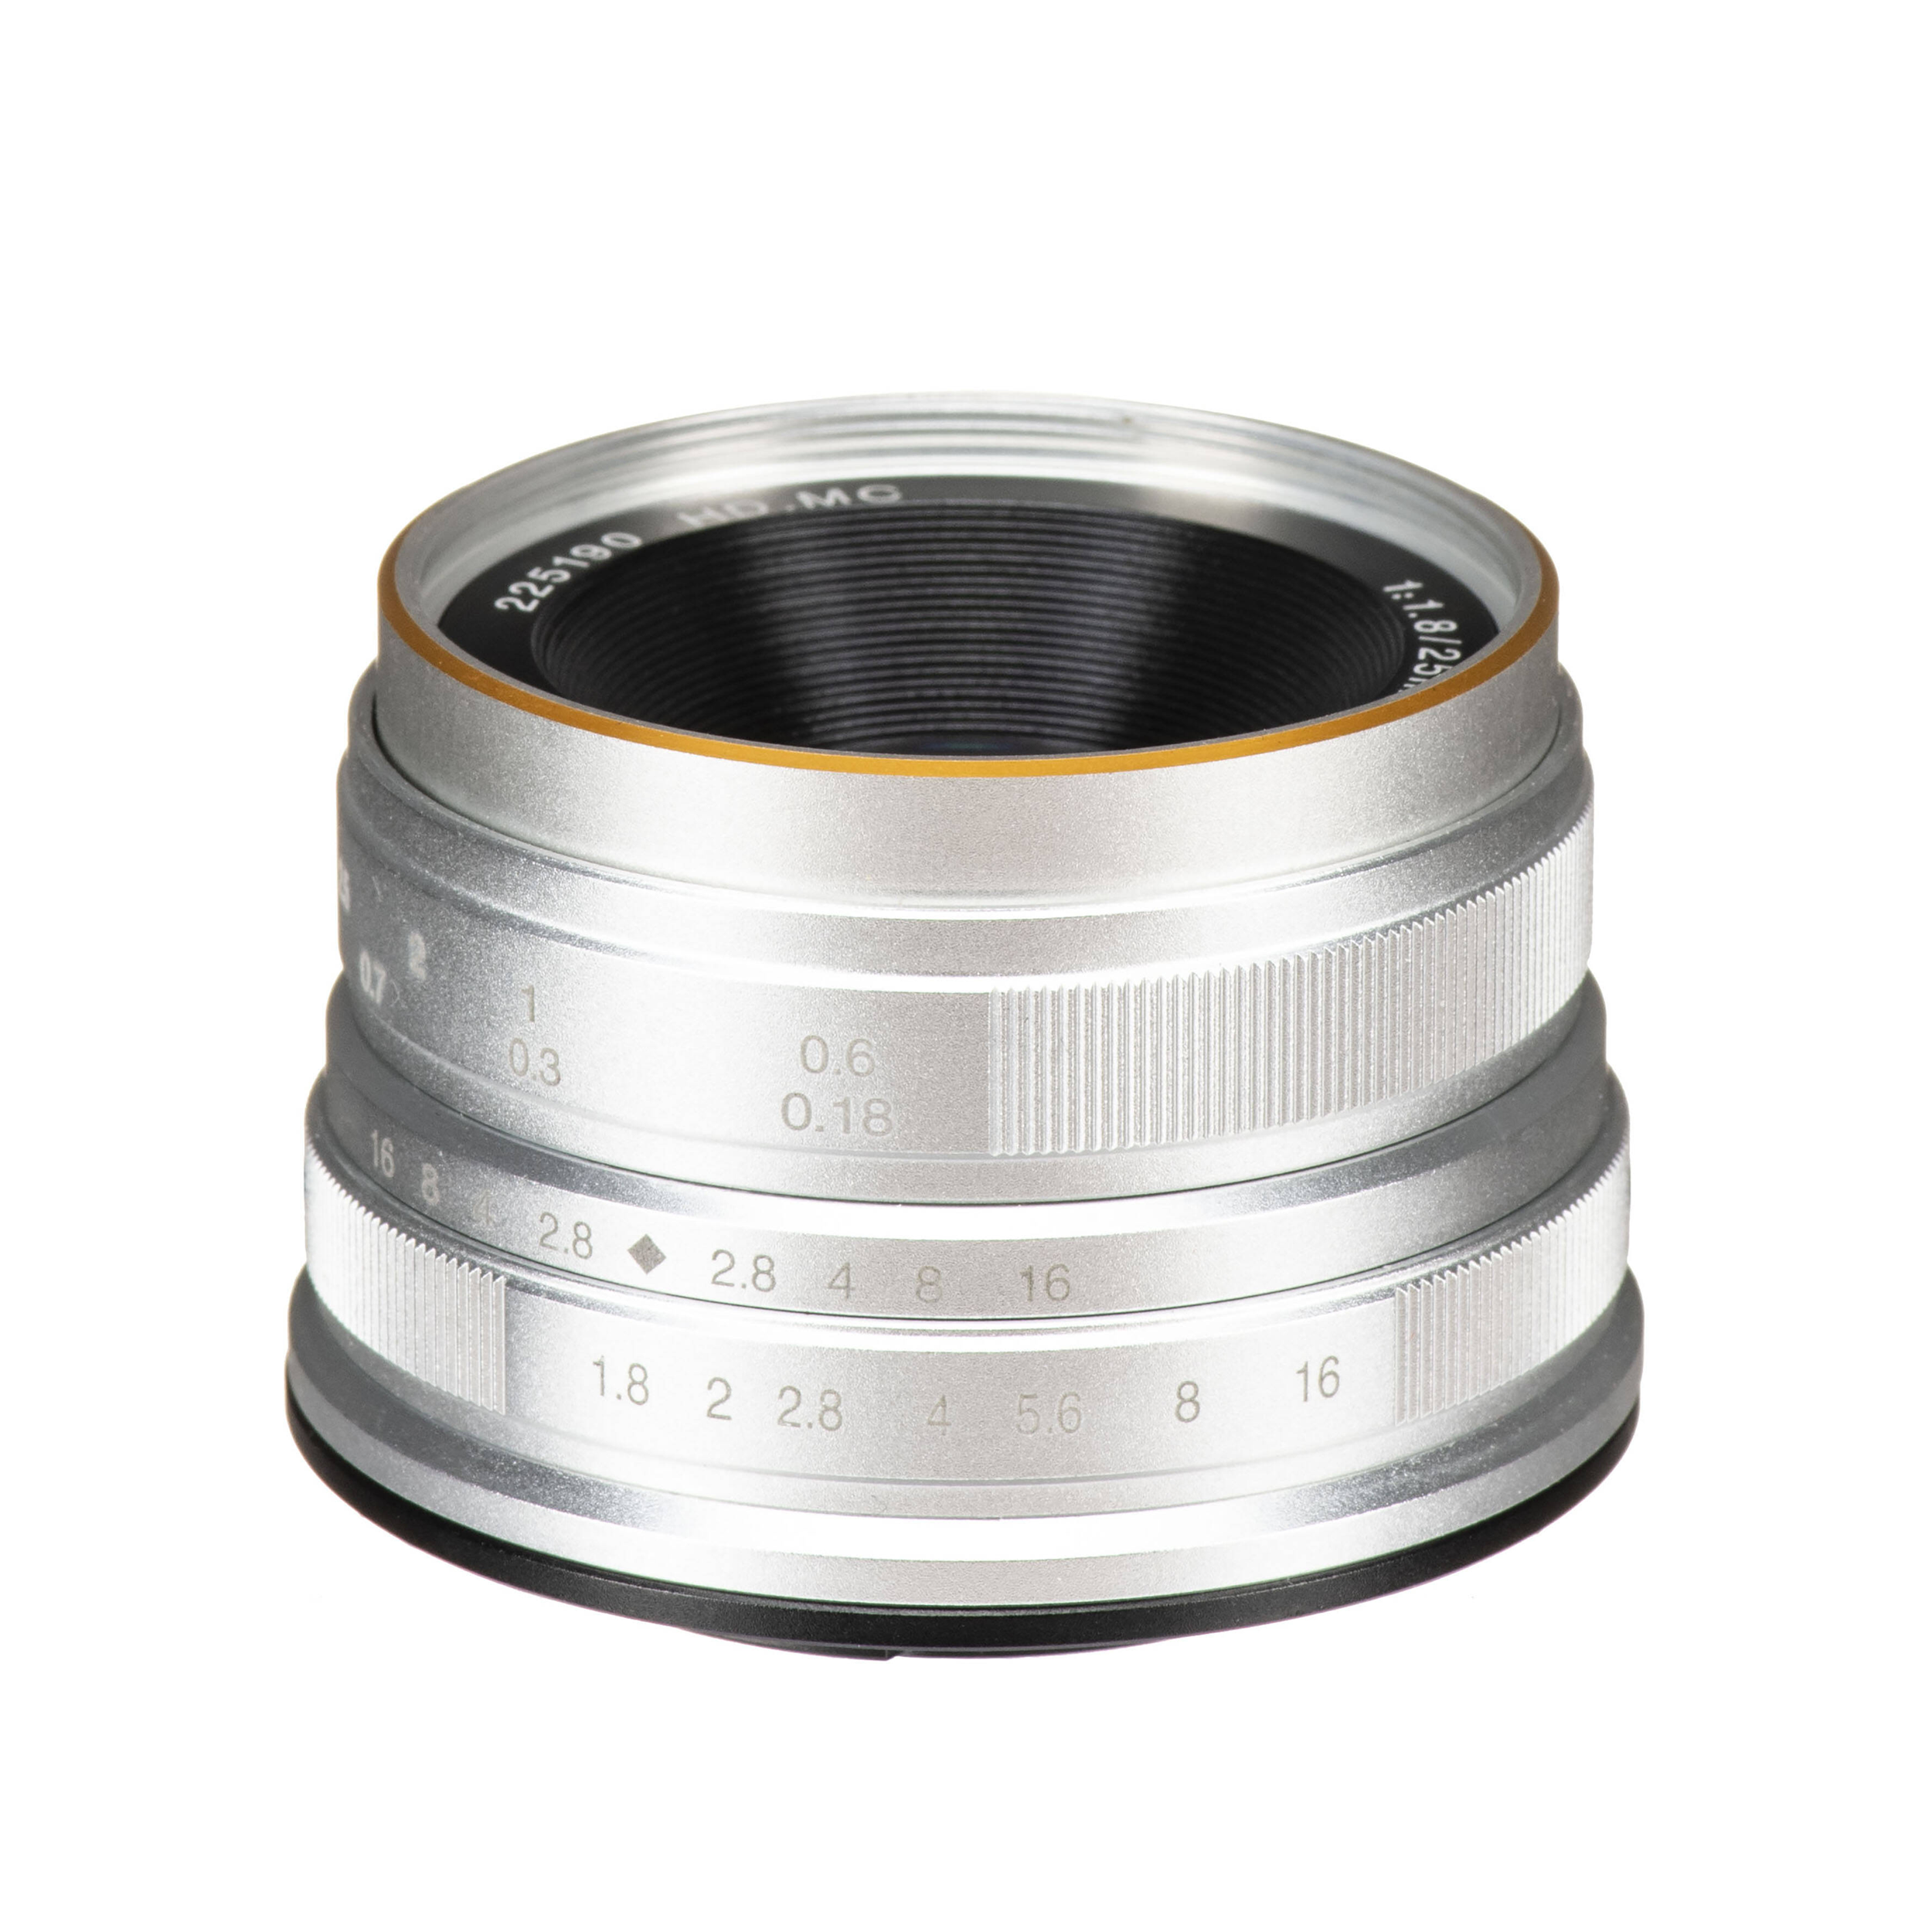 7artisans photoélectrique 25 mm f / 1,8 lentille pour micro quatre tiers